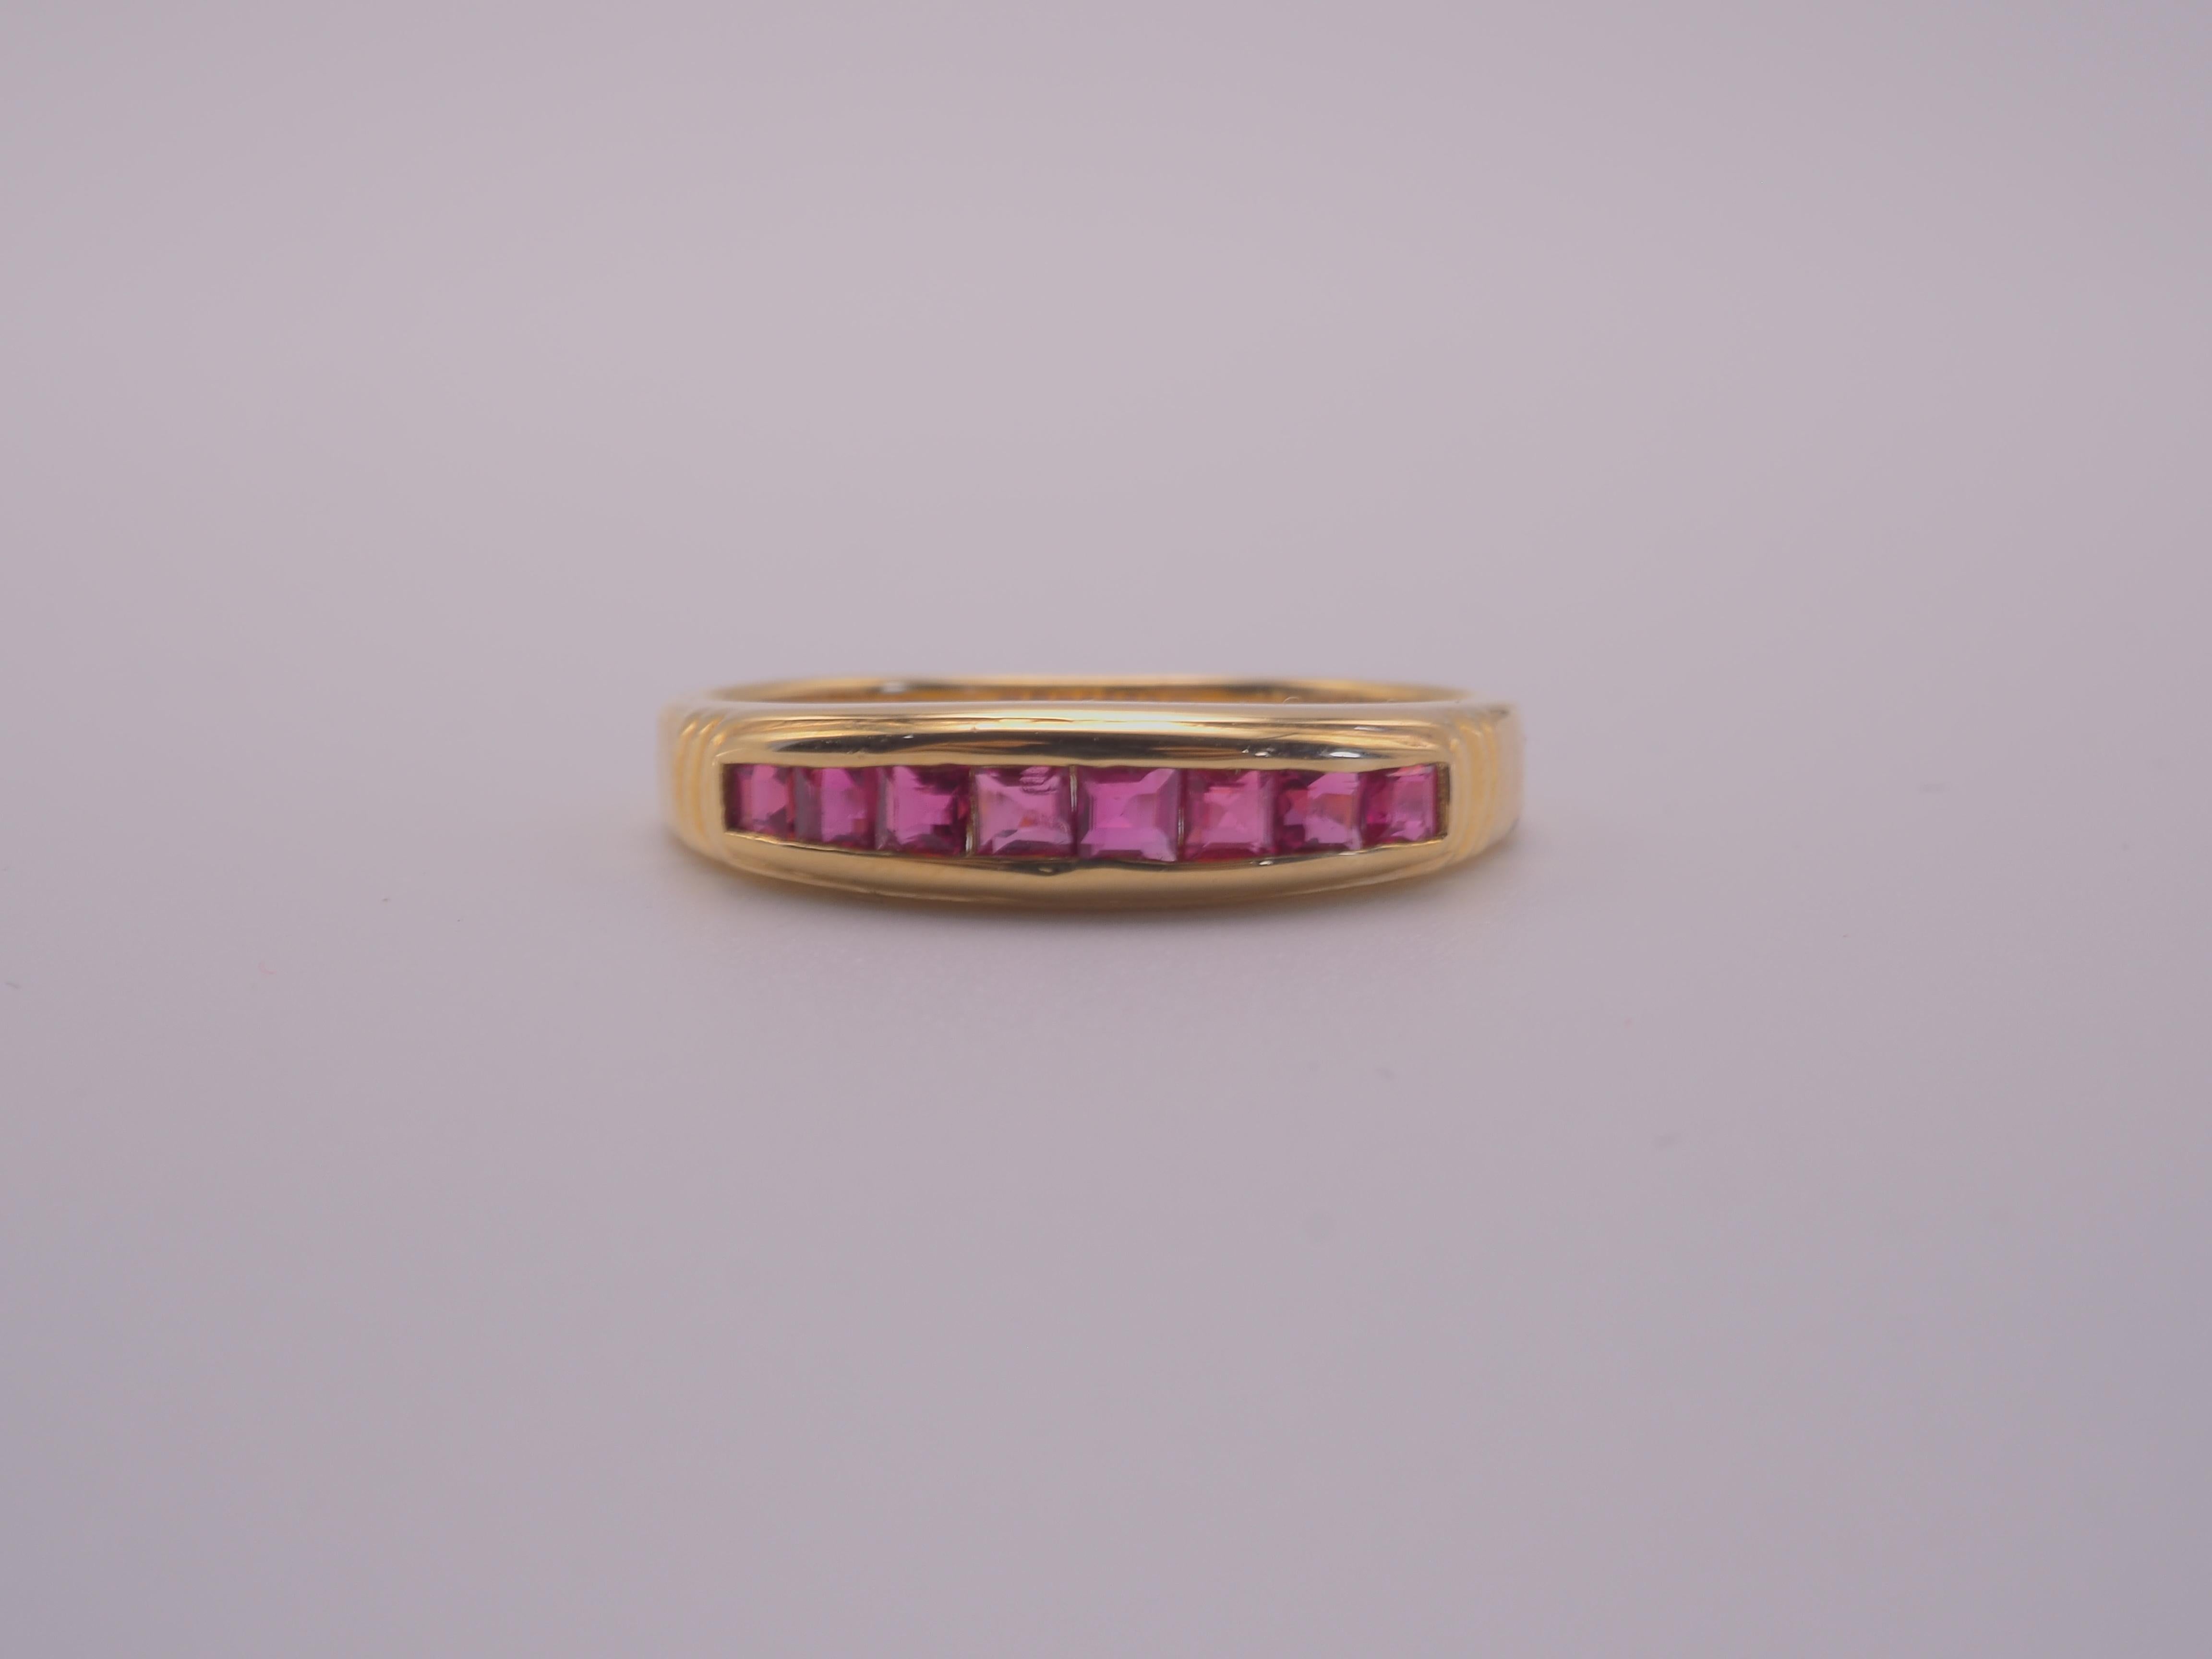 Ein wunderschöner Luxusring im Neo-Vintage-Stil, der für alle Geschlechter geeignet ist. Dieser Ring hat eine Reihe von 8 schönen, quadratischen Thai-Rubinen, die schön in das Band eingelassen sind. Die quadratisch geschliffenen Rubine variieren in